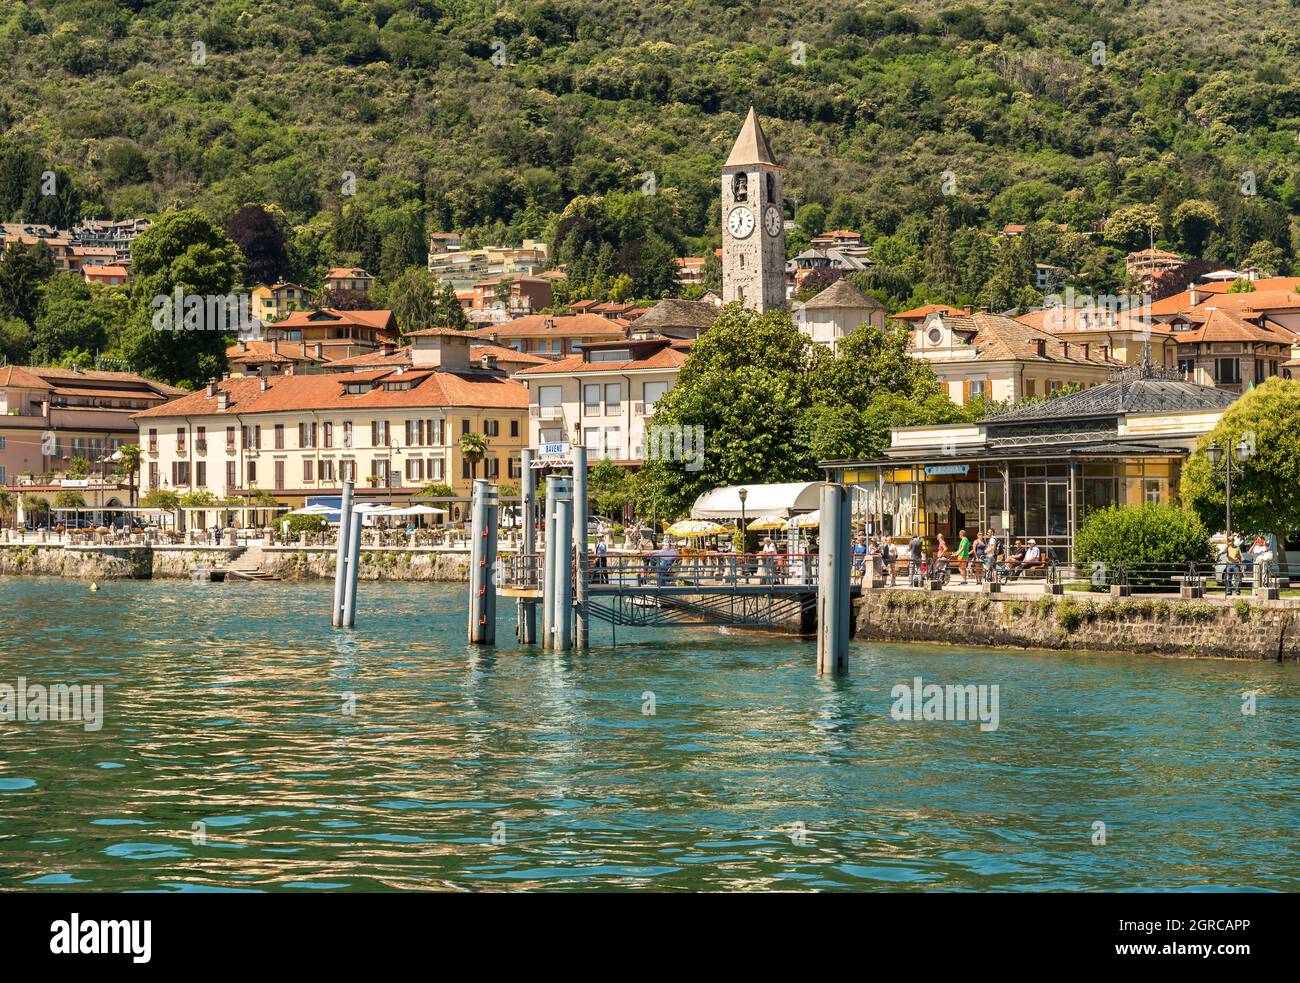 Baveno, Verbania, Italia - 14 giugno 2018: Vista sul molo della cittadina di Baveno, con turisti che in attesa del traghetto, sulla riva del Lago maggiore i. Foto Stock